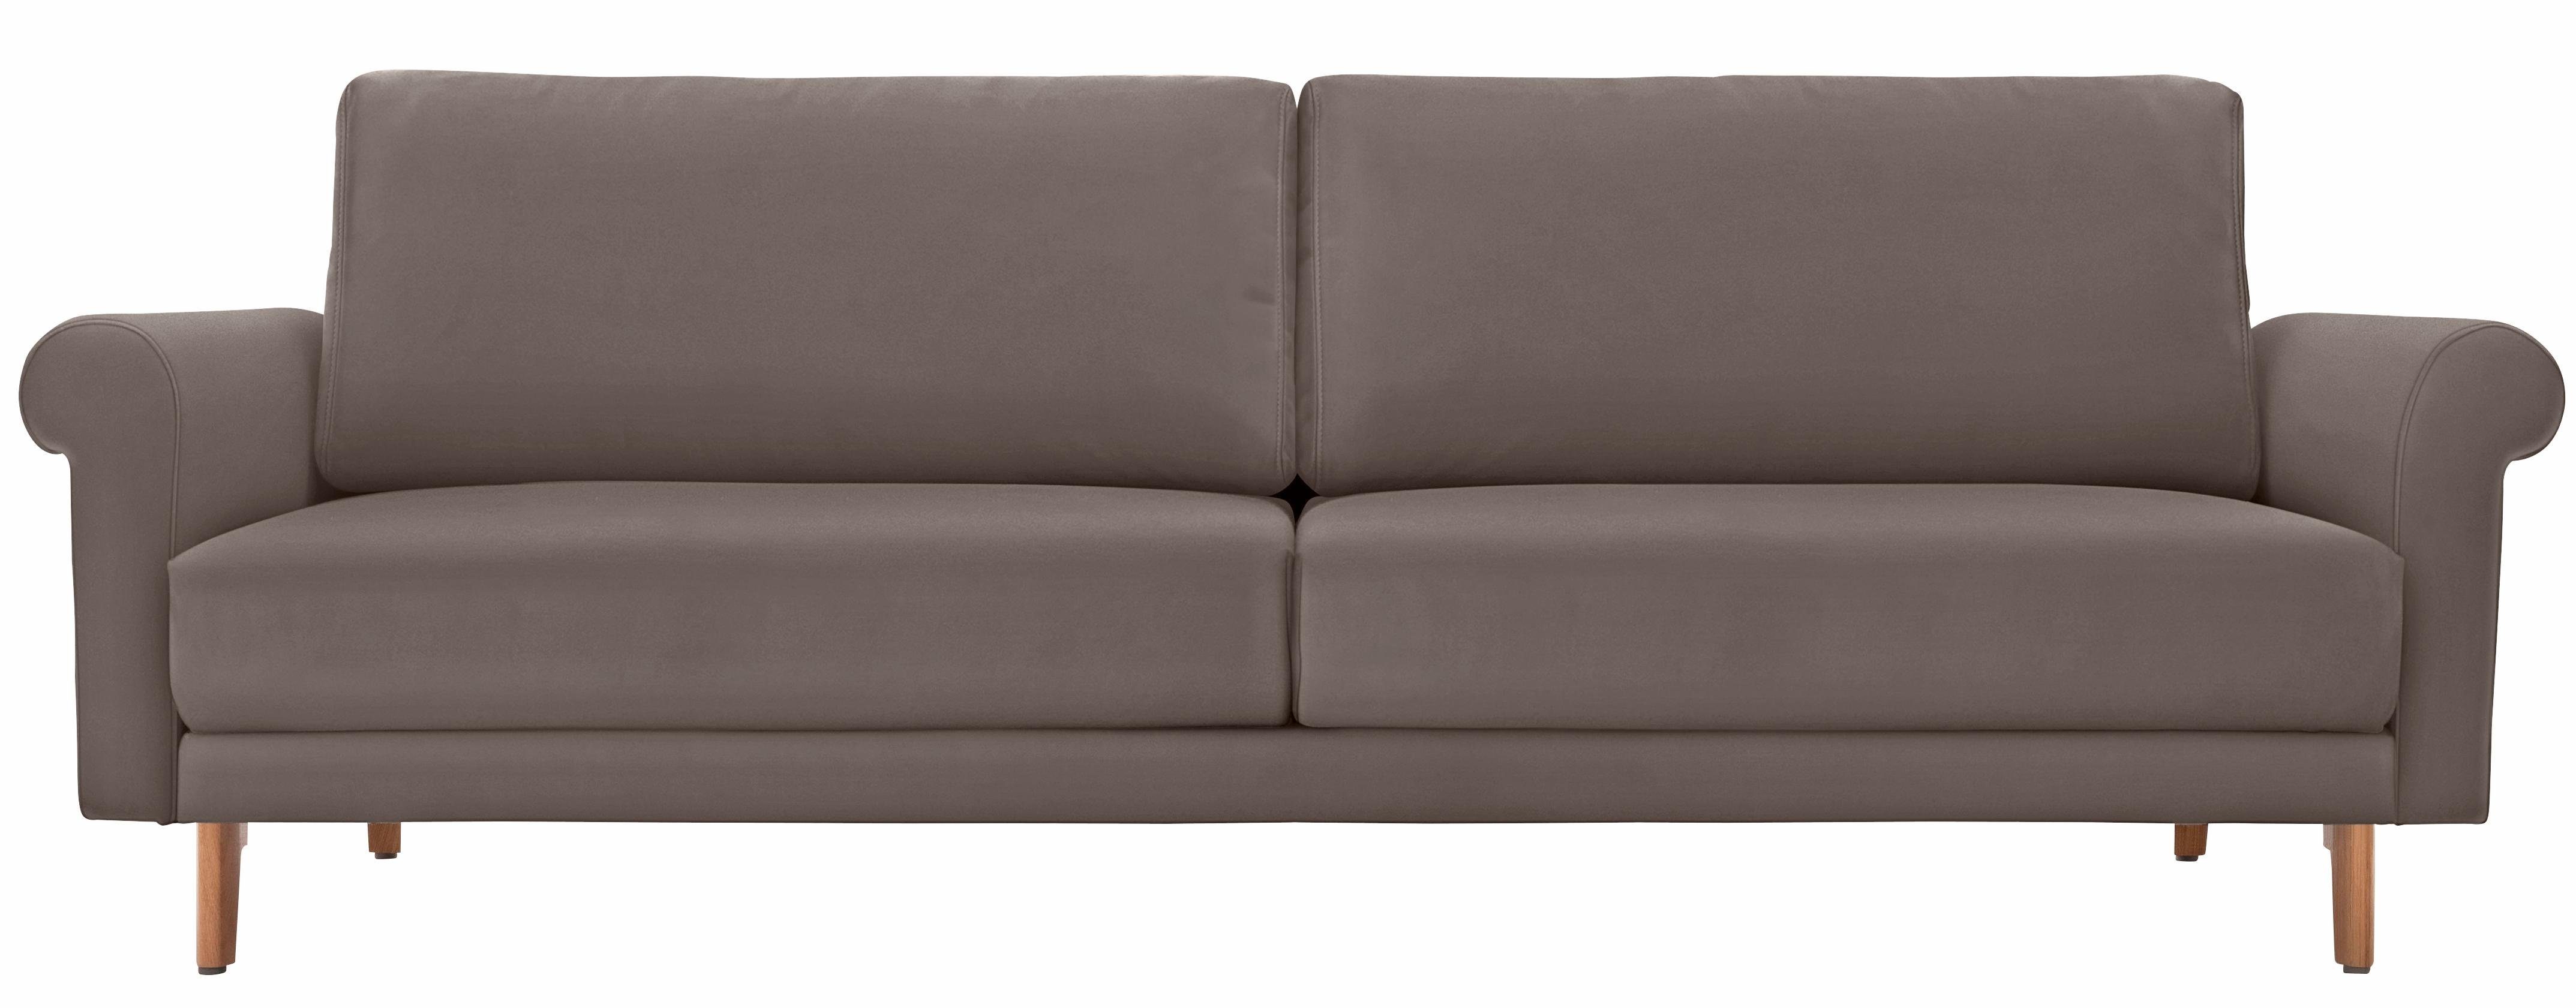 208 modern Breite hs.450, Füße cm, hülsta 3-Sitzer Nussbaum sofa in Landhaus,